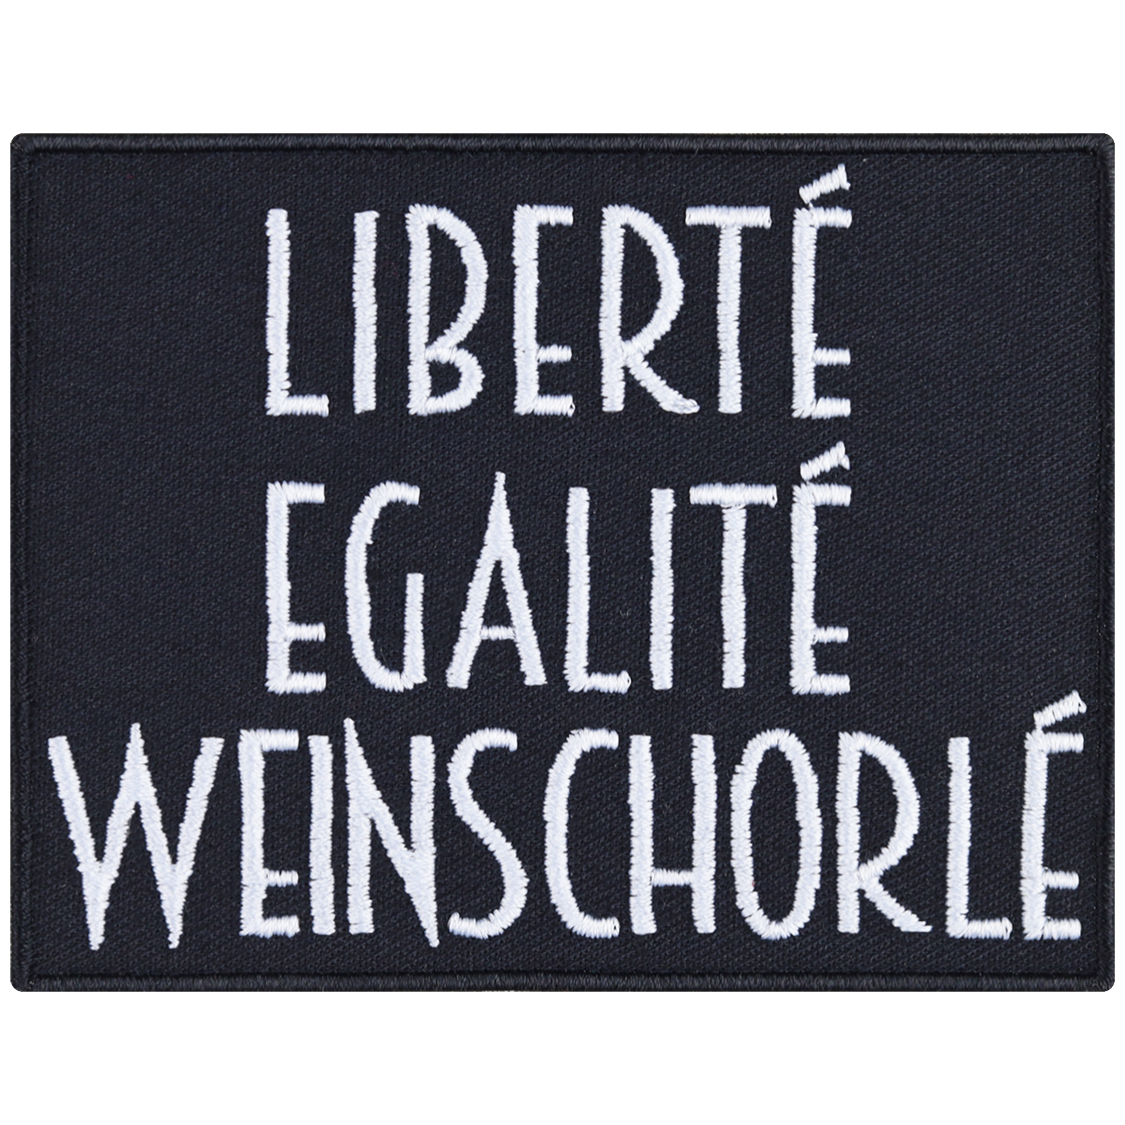 Liberte, Egalite, Weinschorle - Patch